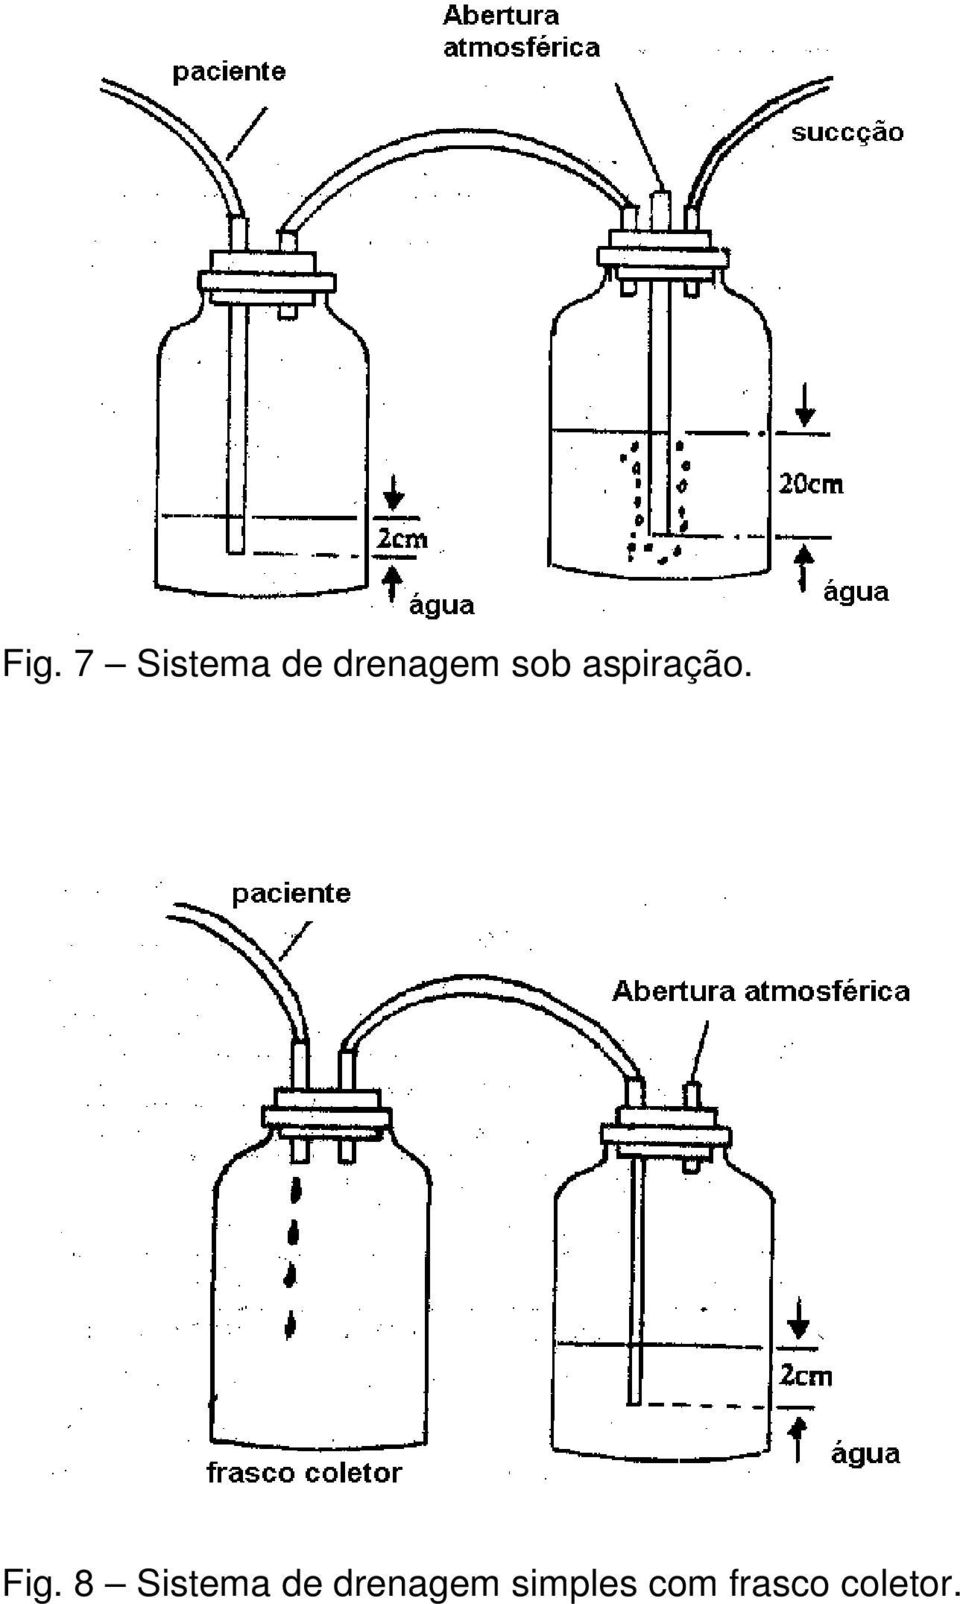 Fig. 8 Sistema de